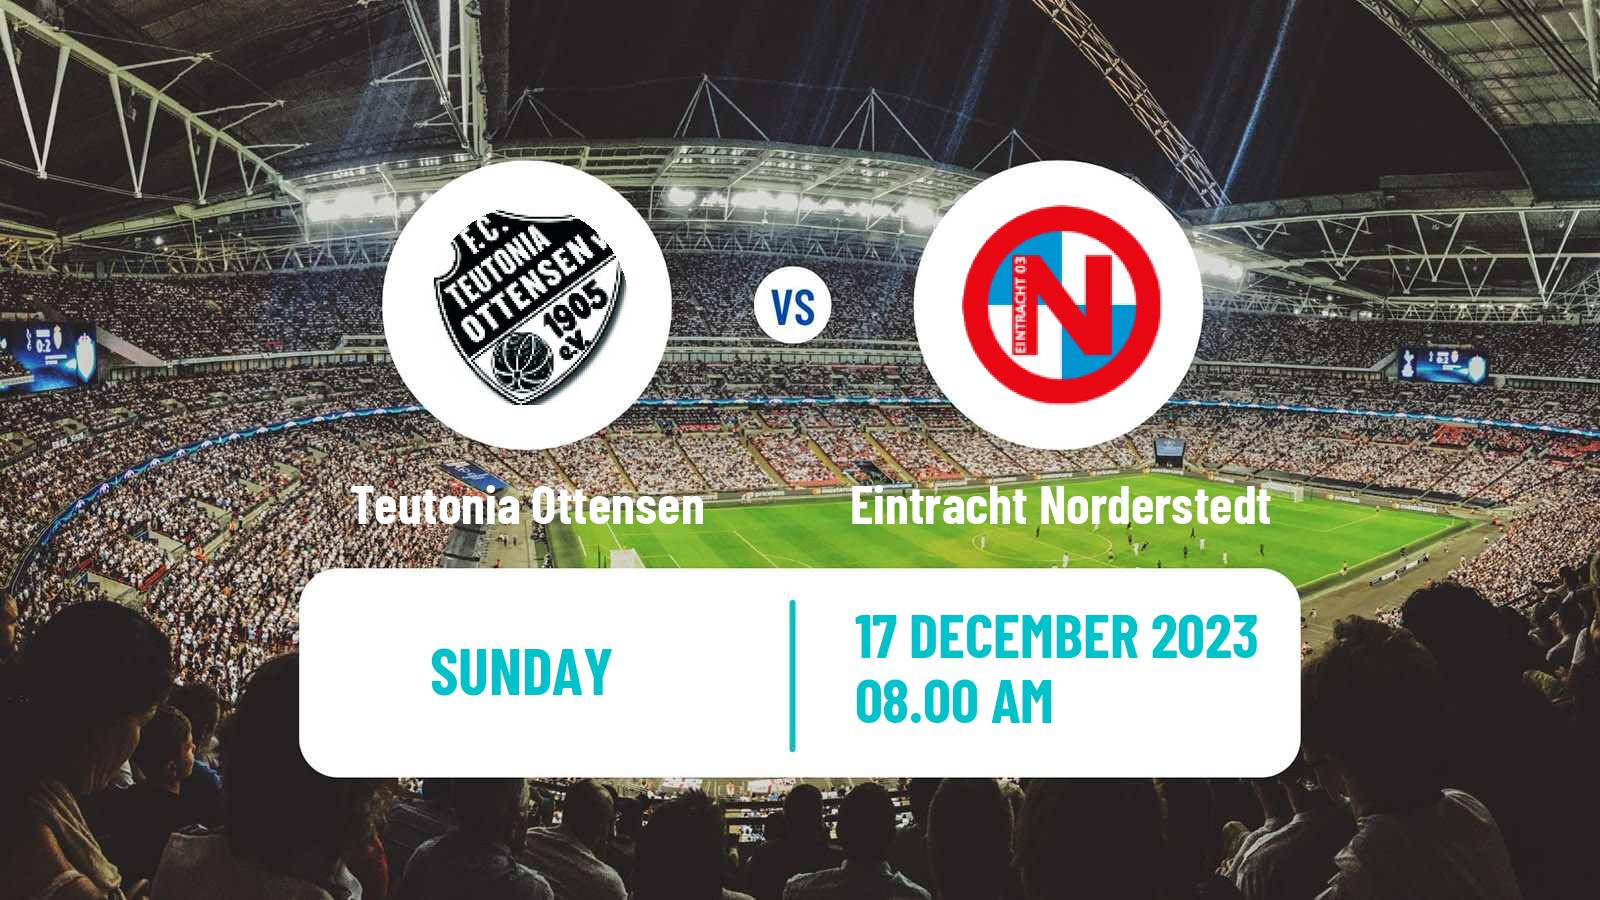 Soccer German Regionalliga North Teutonia Ottensen - Eintracht Norderstedt